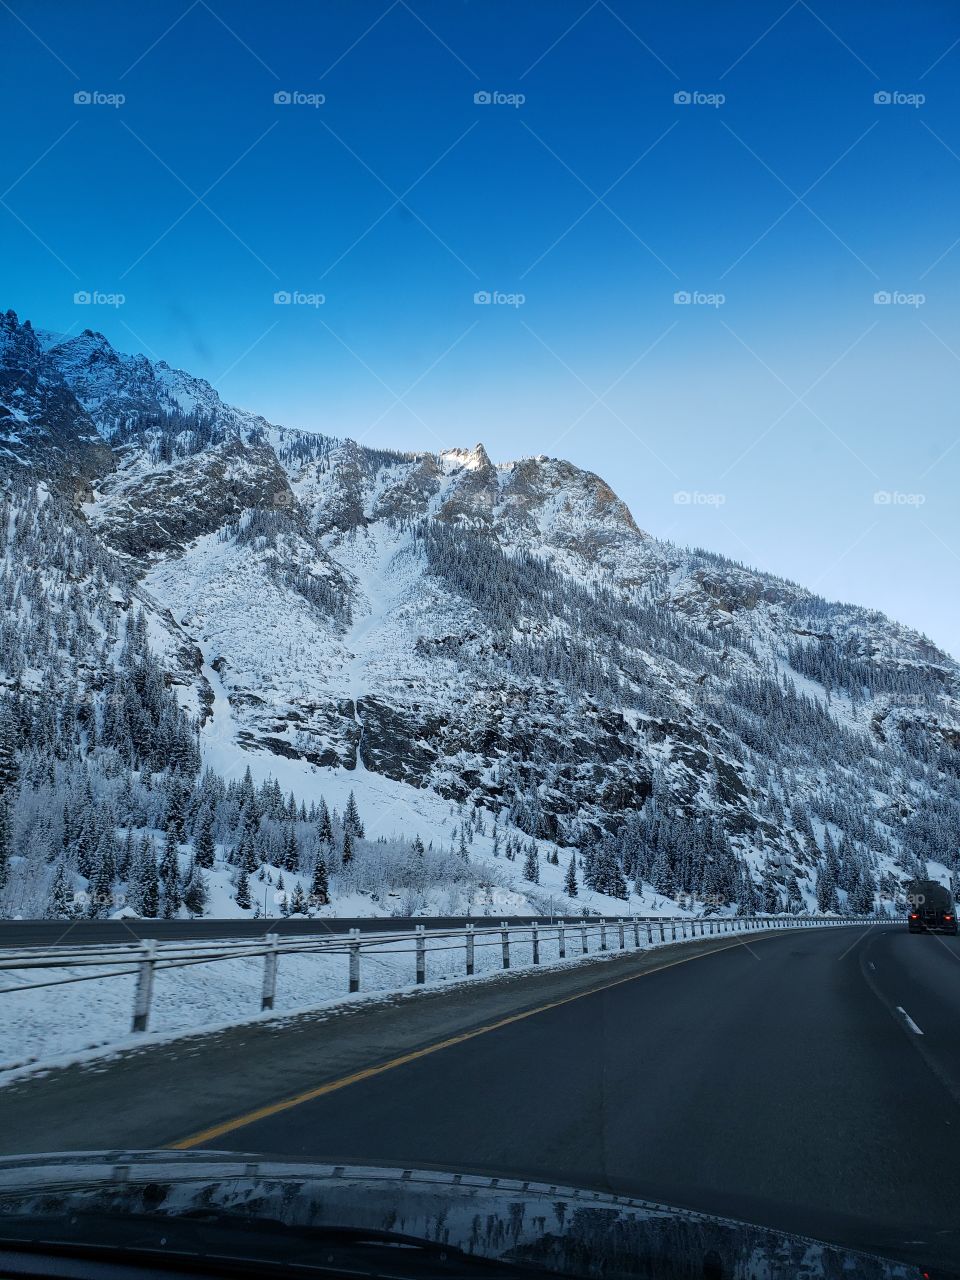 Beautiful Colorado, USA, APRIL SNOW, 2019